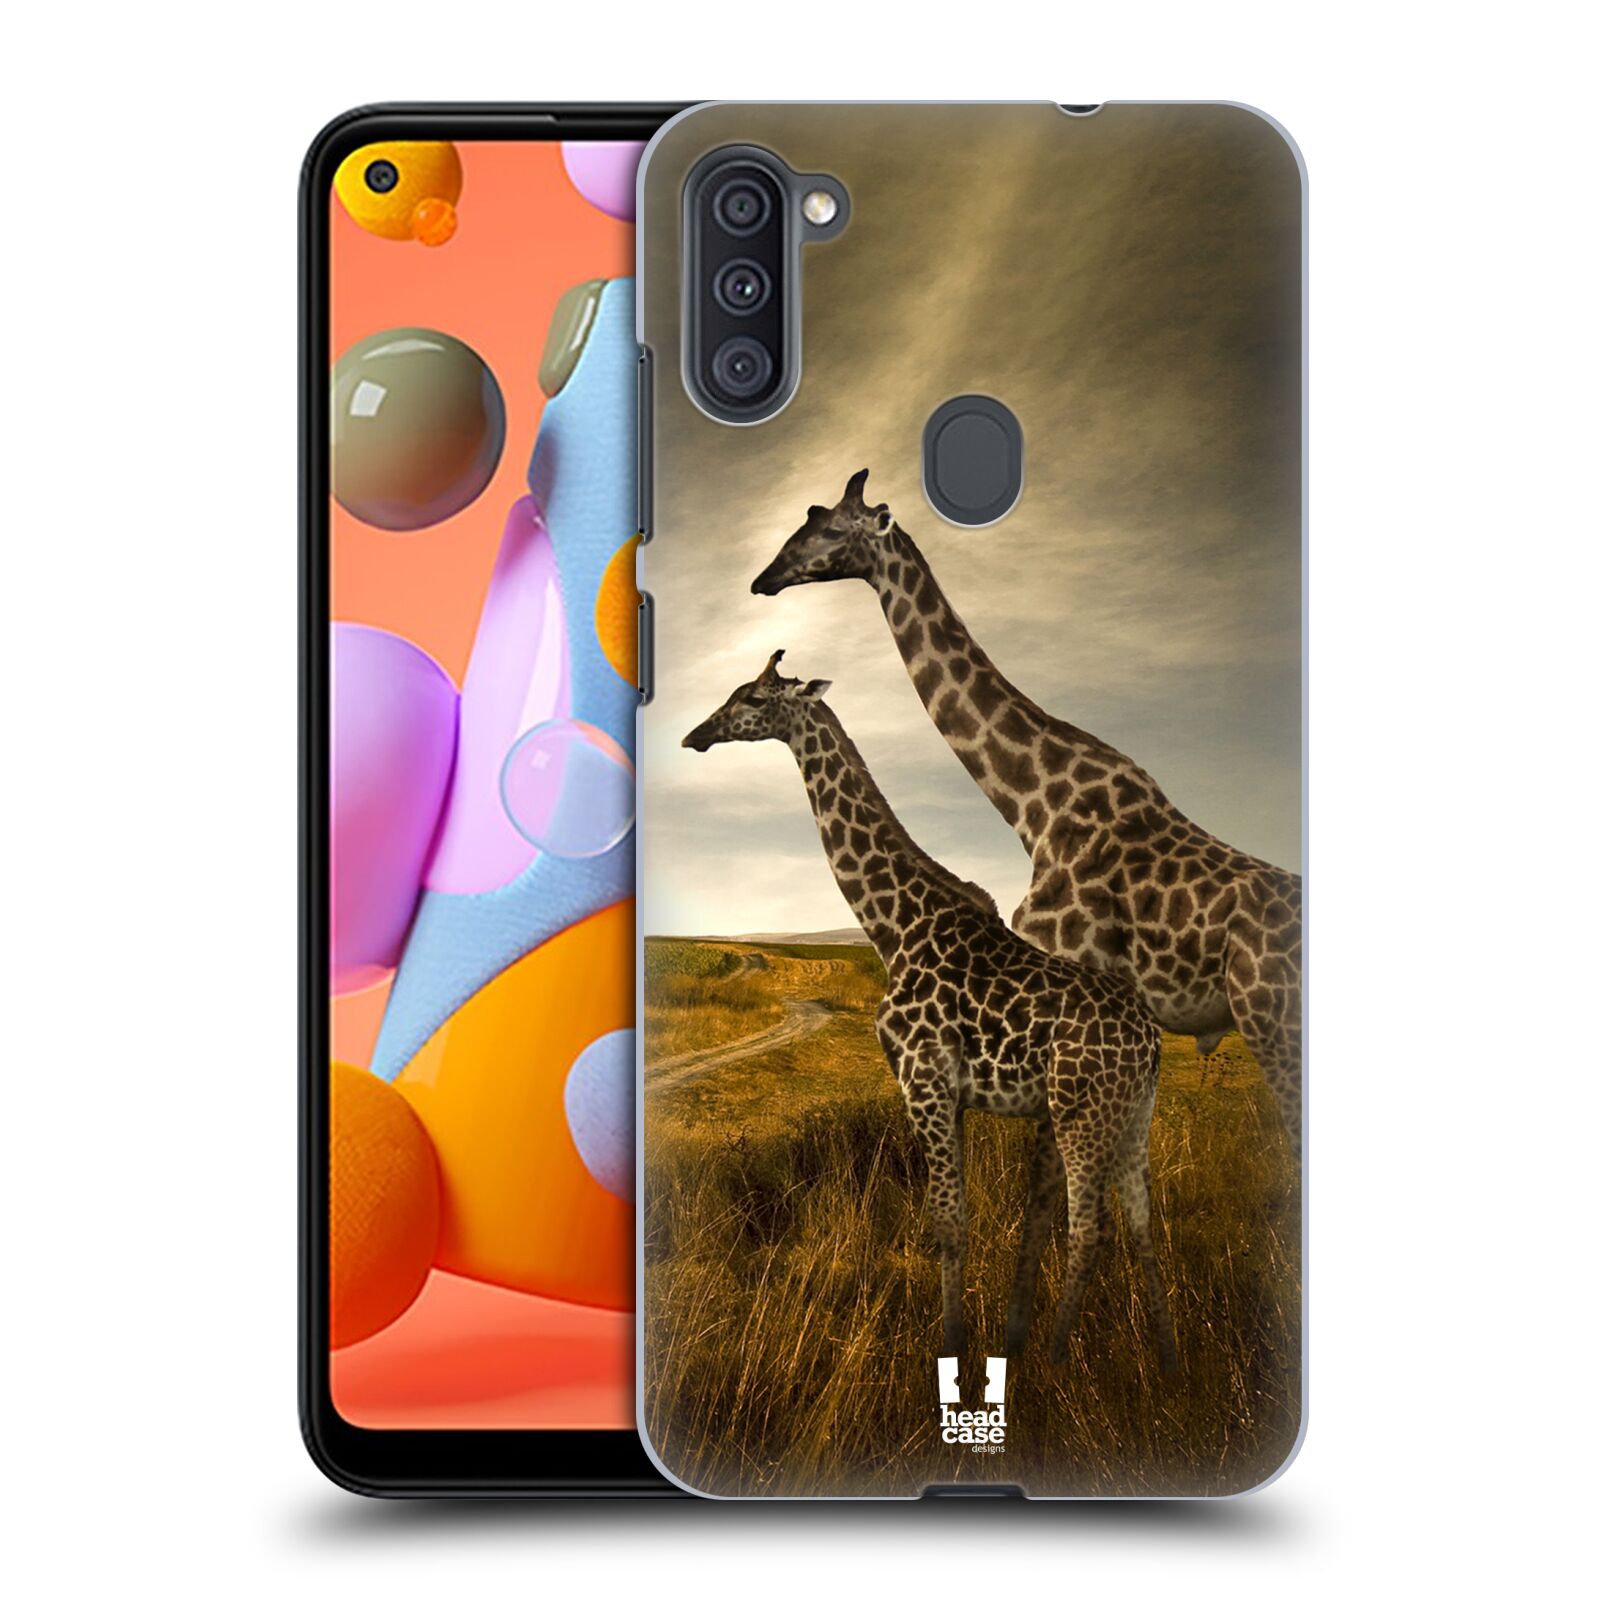 Zadní obal pro mobil Samsung Galaxy A11 - HEAD CASE - Svět zvířat žirafy